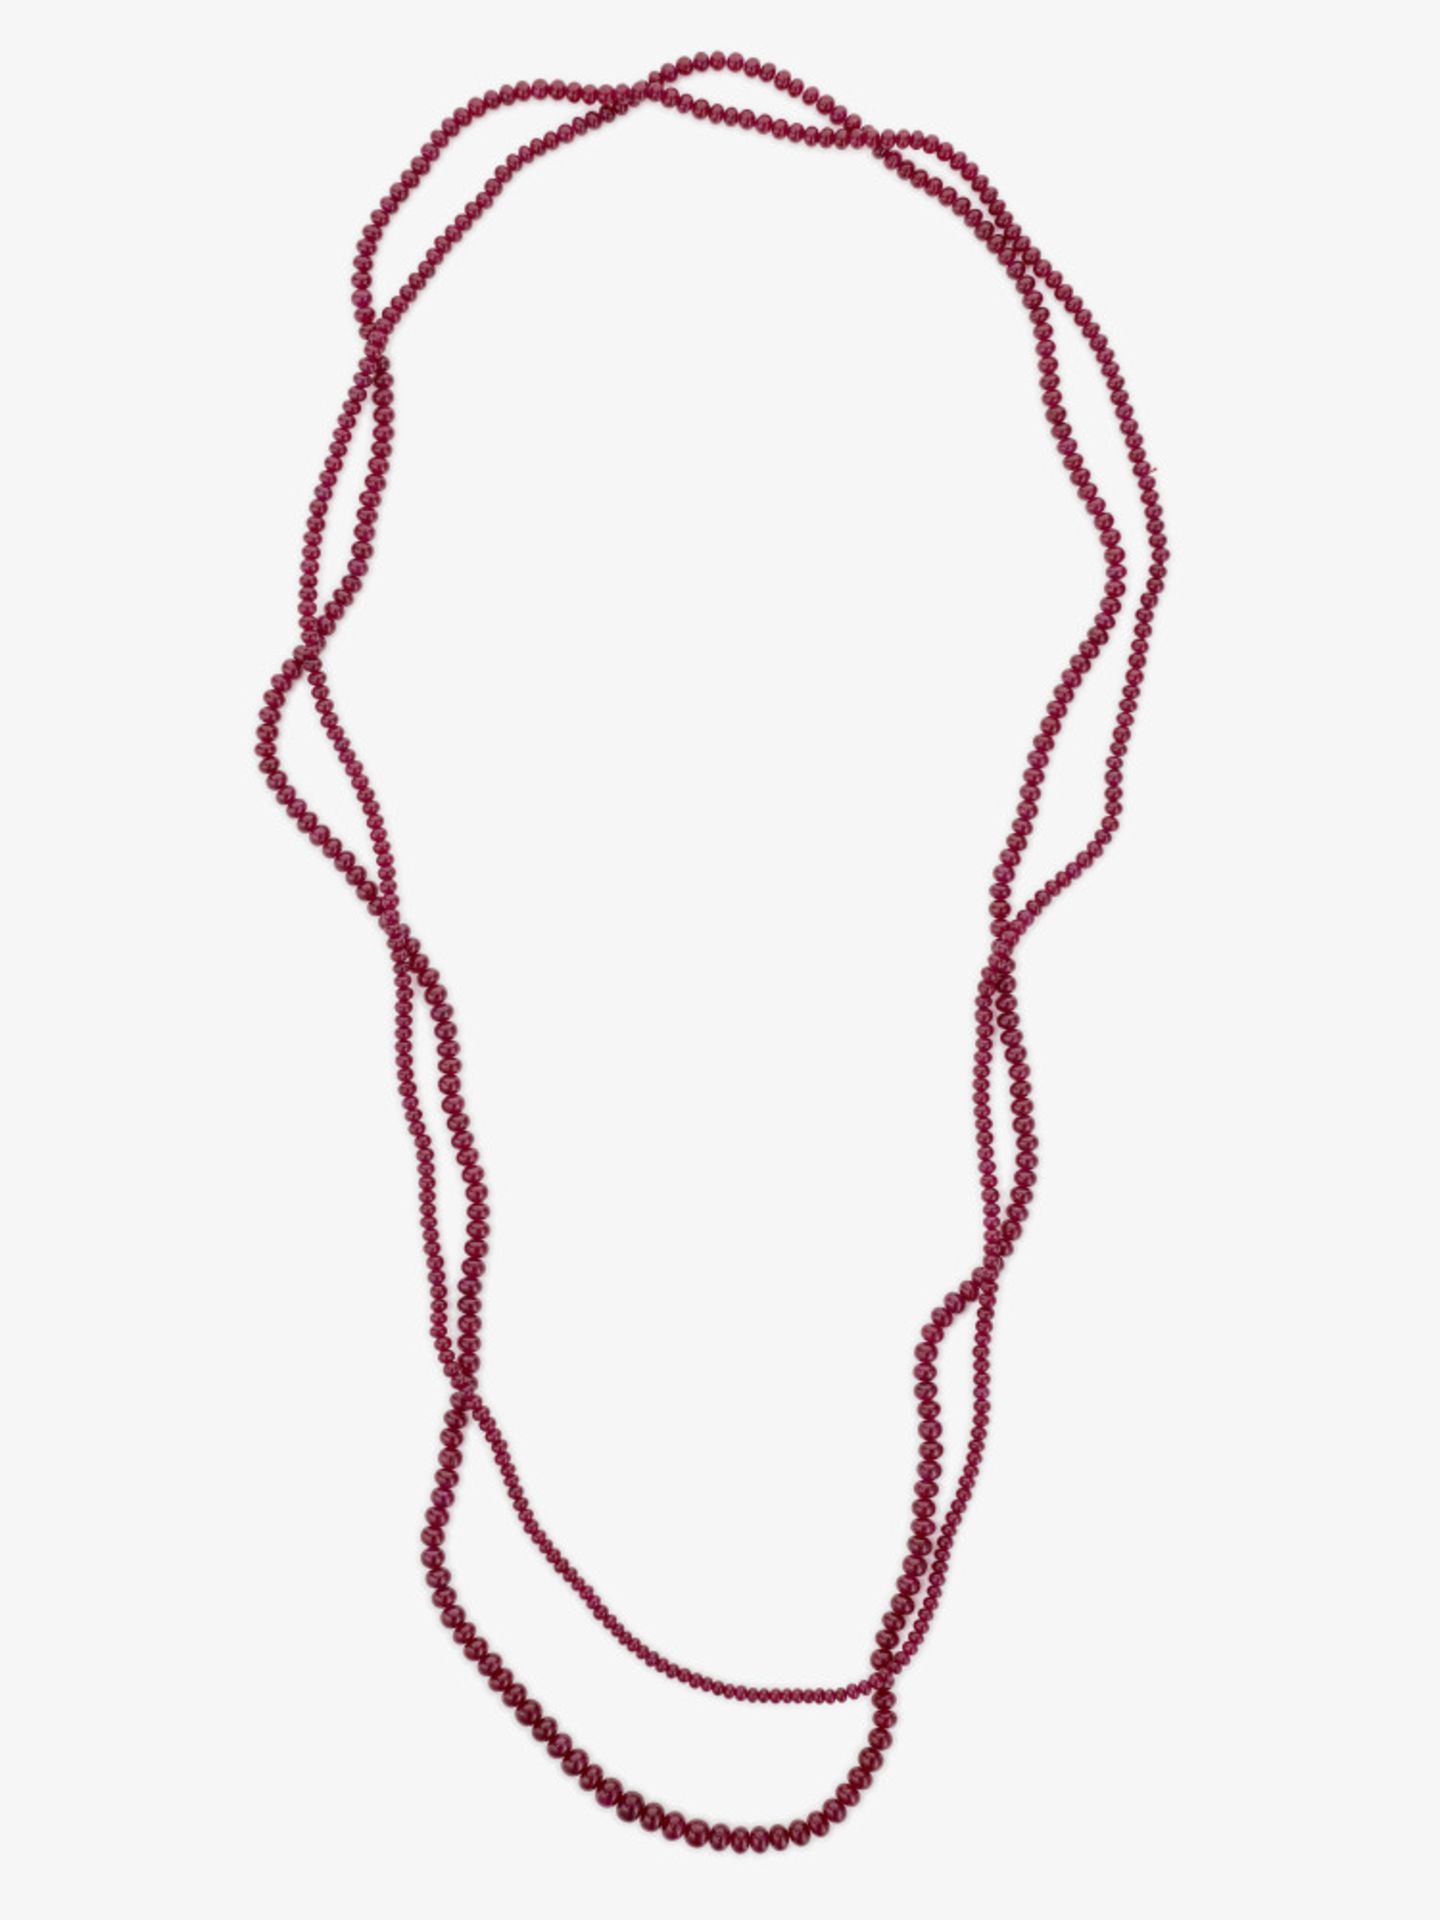 A sautoir: rare Burmese old mine ruby bead necklace - Image 4 of 4